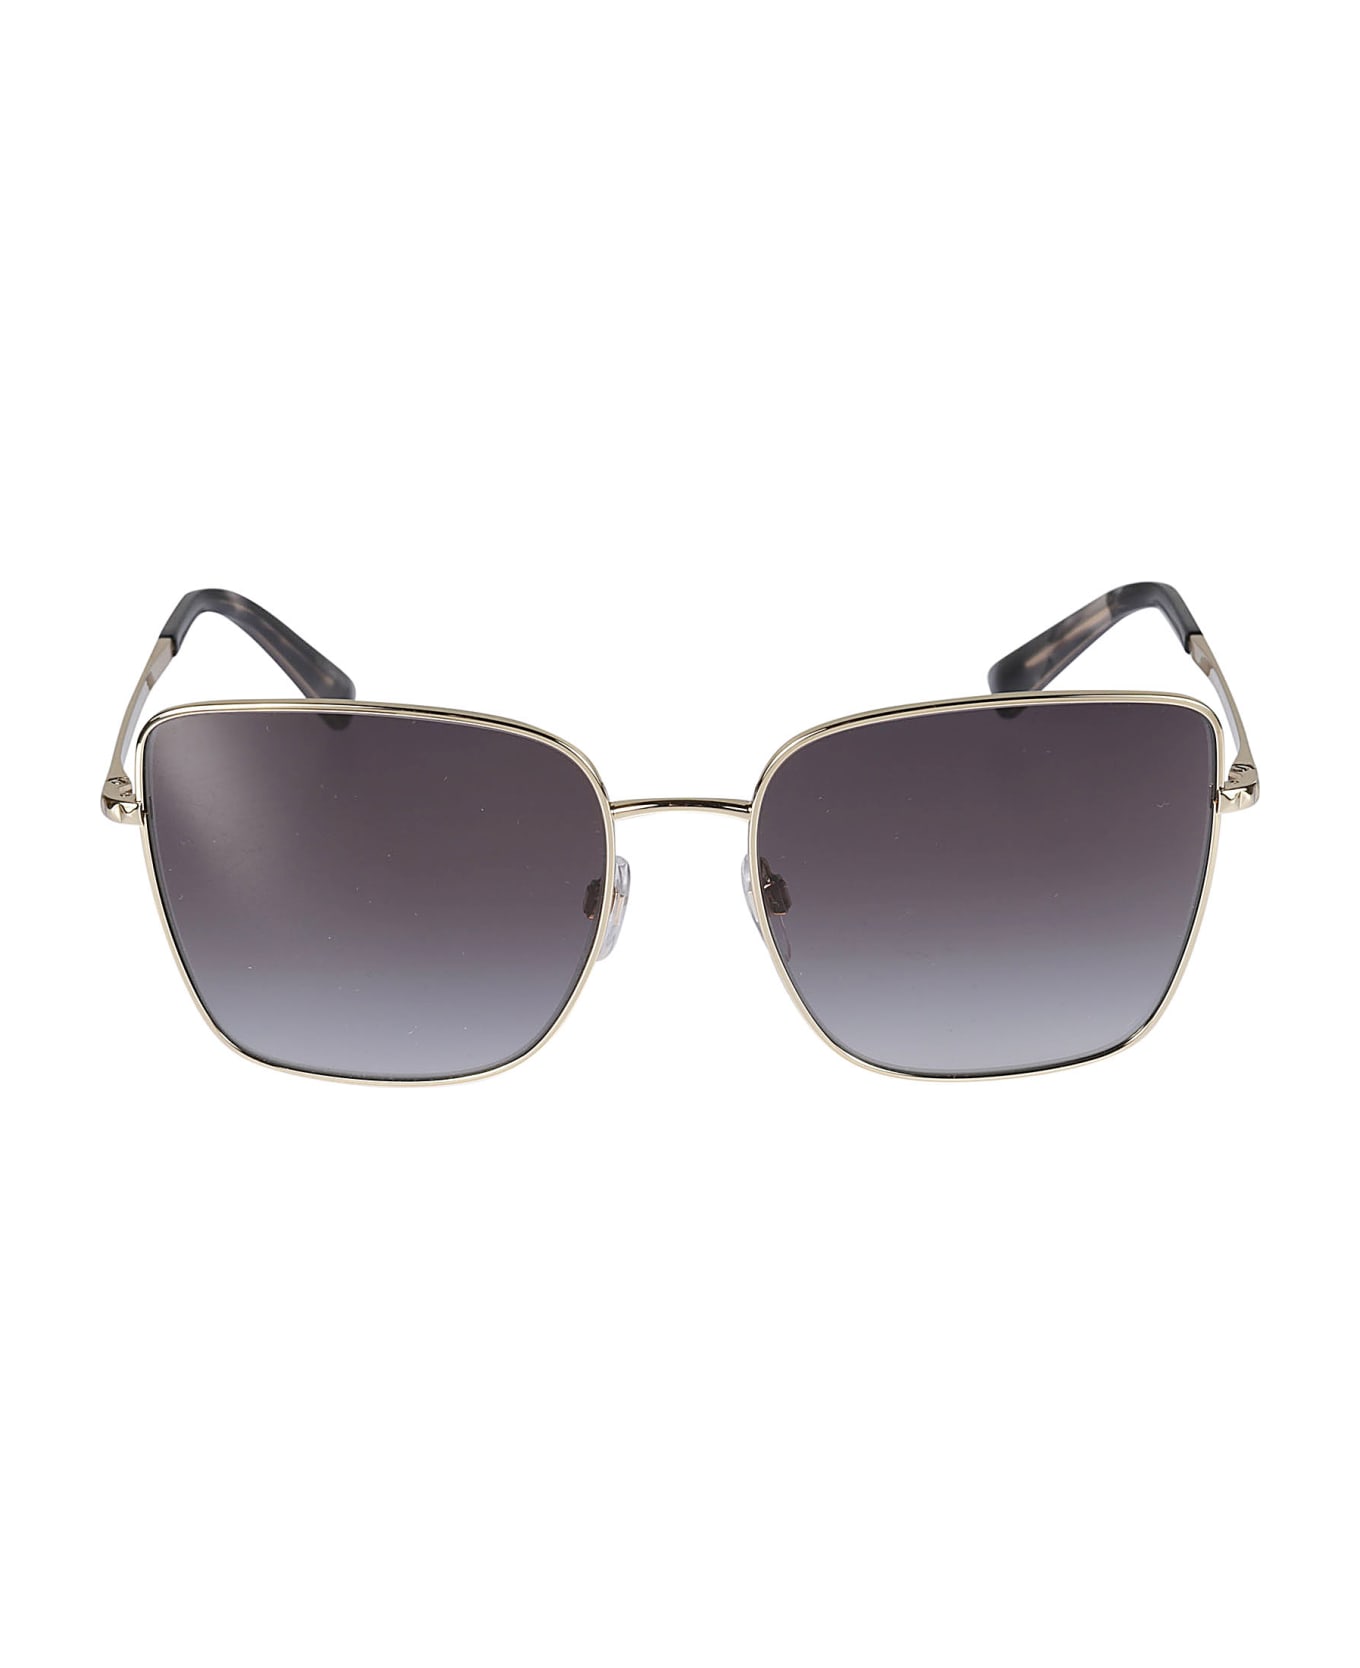 Valentino Eyewear Sole30038g Sunglasses - 30038g サングラス